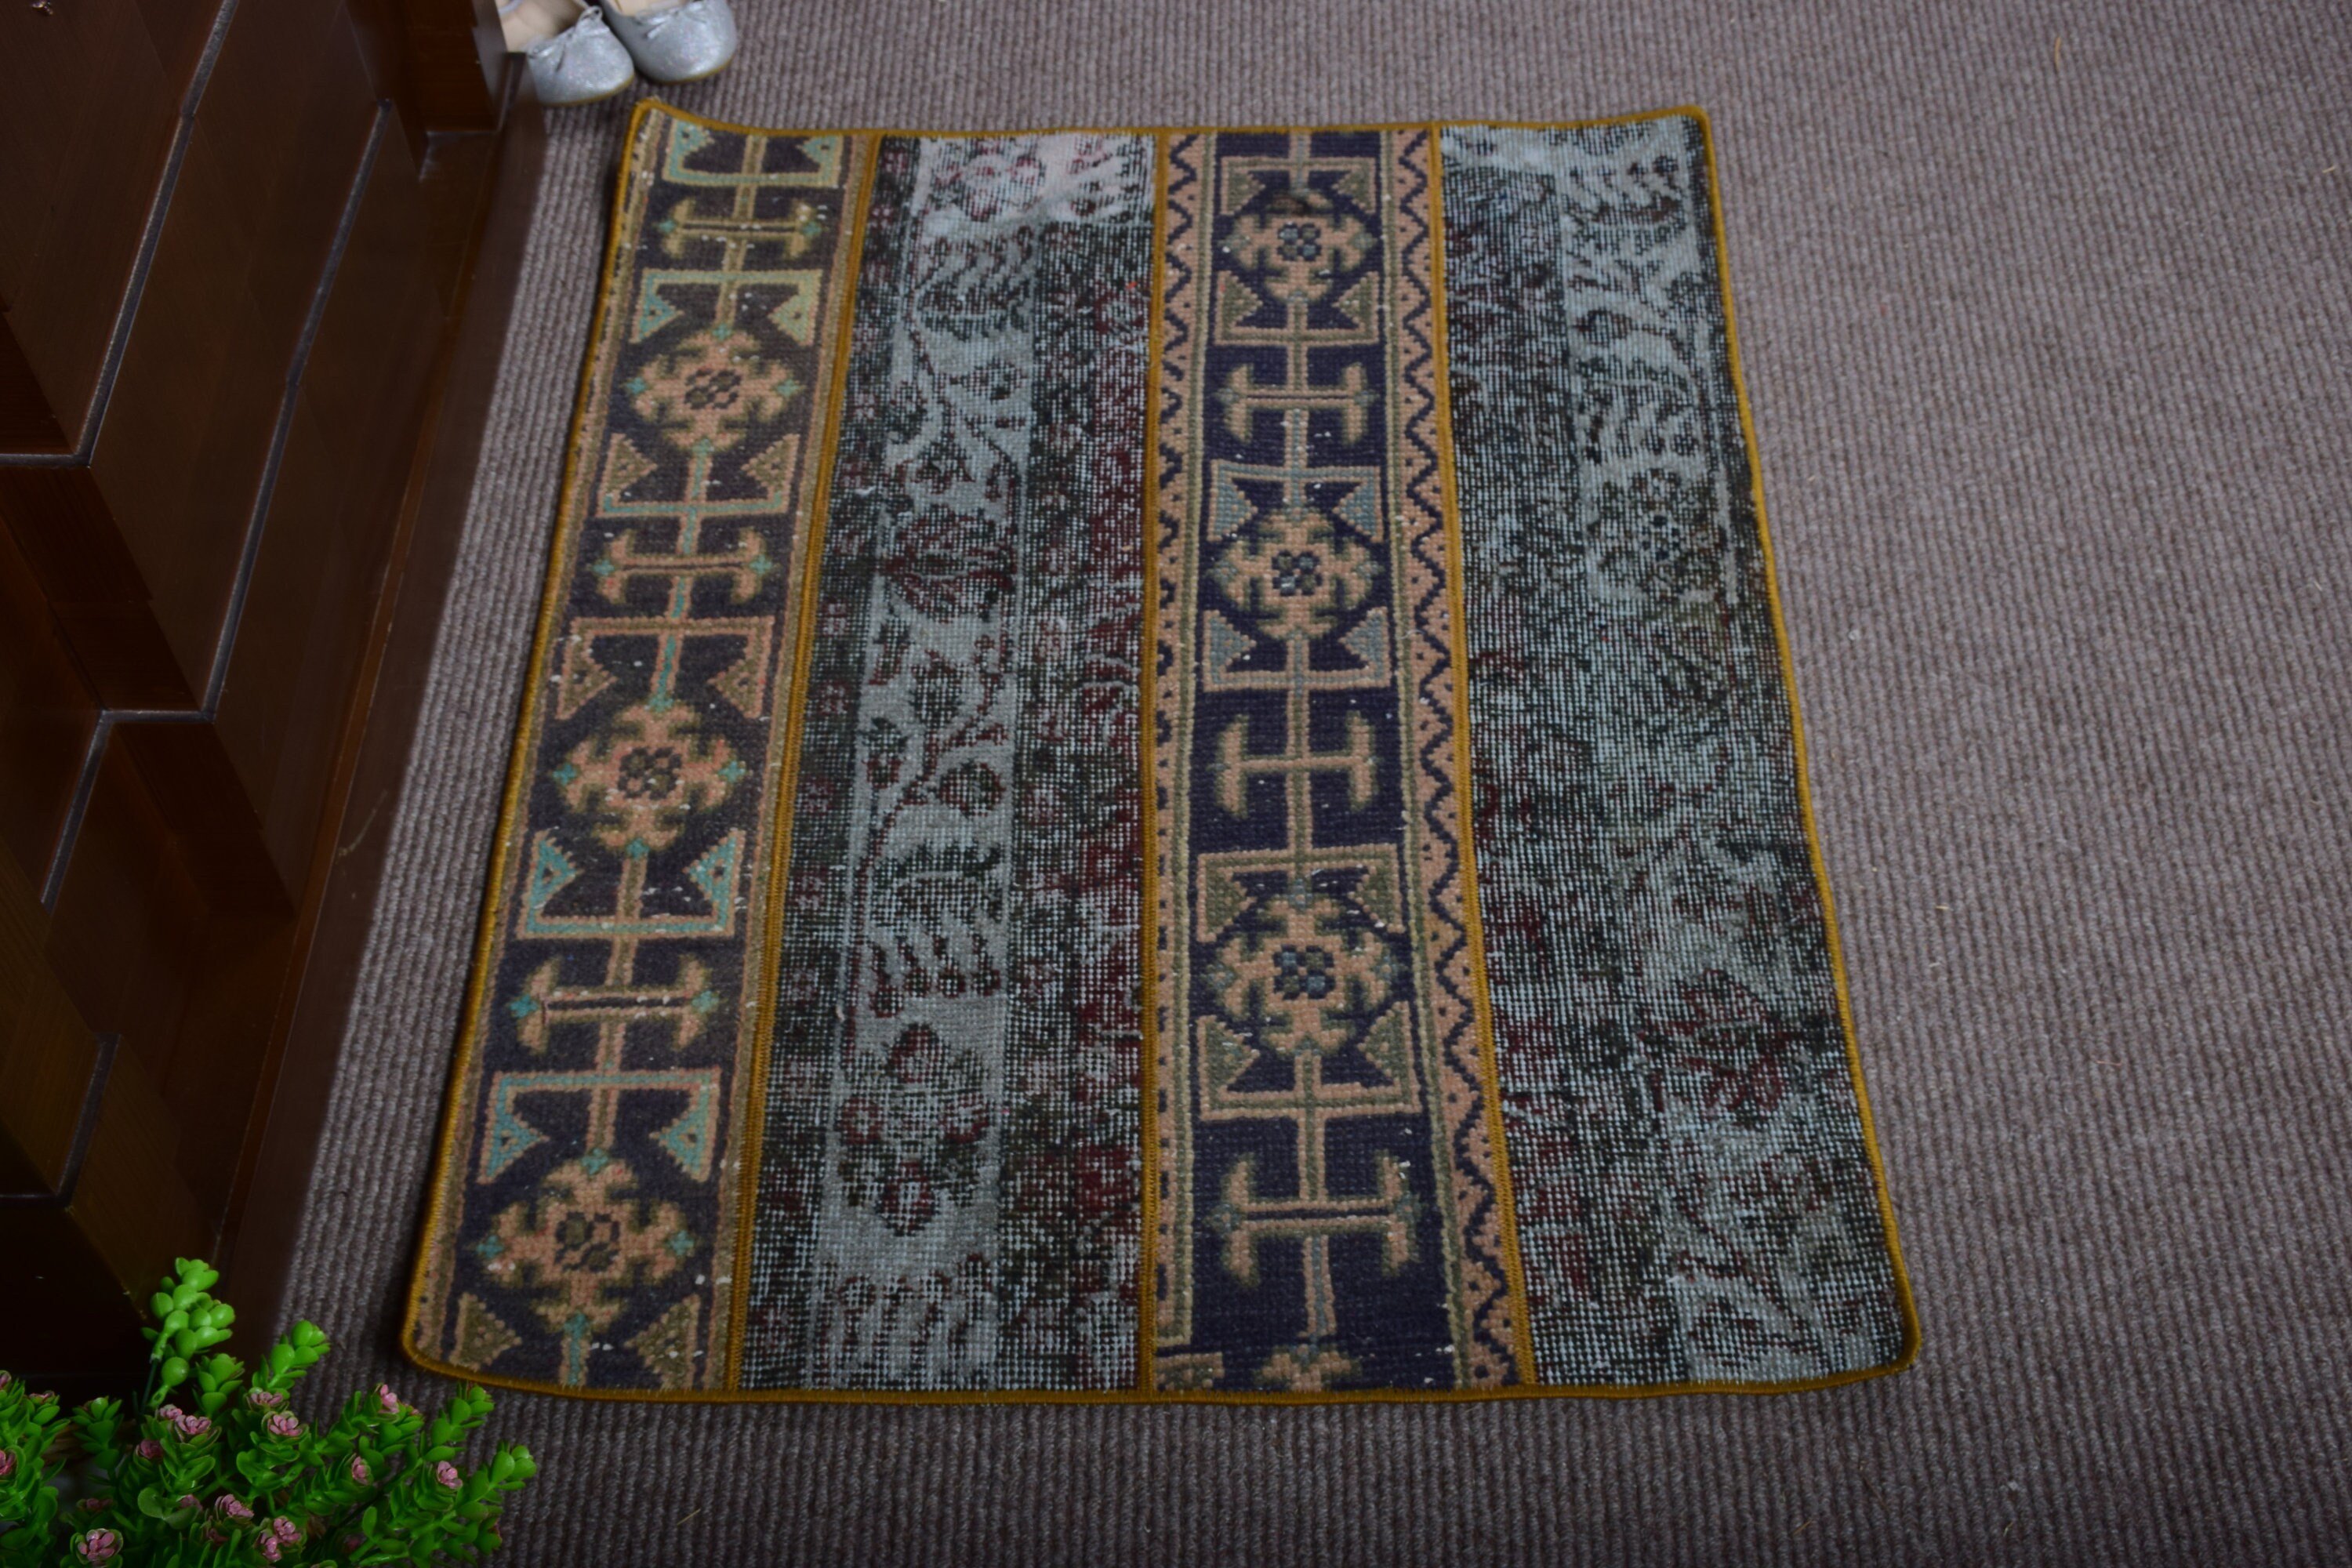 Orange Oriental Rugs, Turkish Rug, Vintage Rugs, Aztec Rugs, Door Mat Rugs, Bedroom Rug, 2.5x3.2 ft Small Rug, Floor Rug, Moroccan Rug